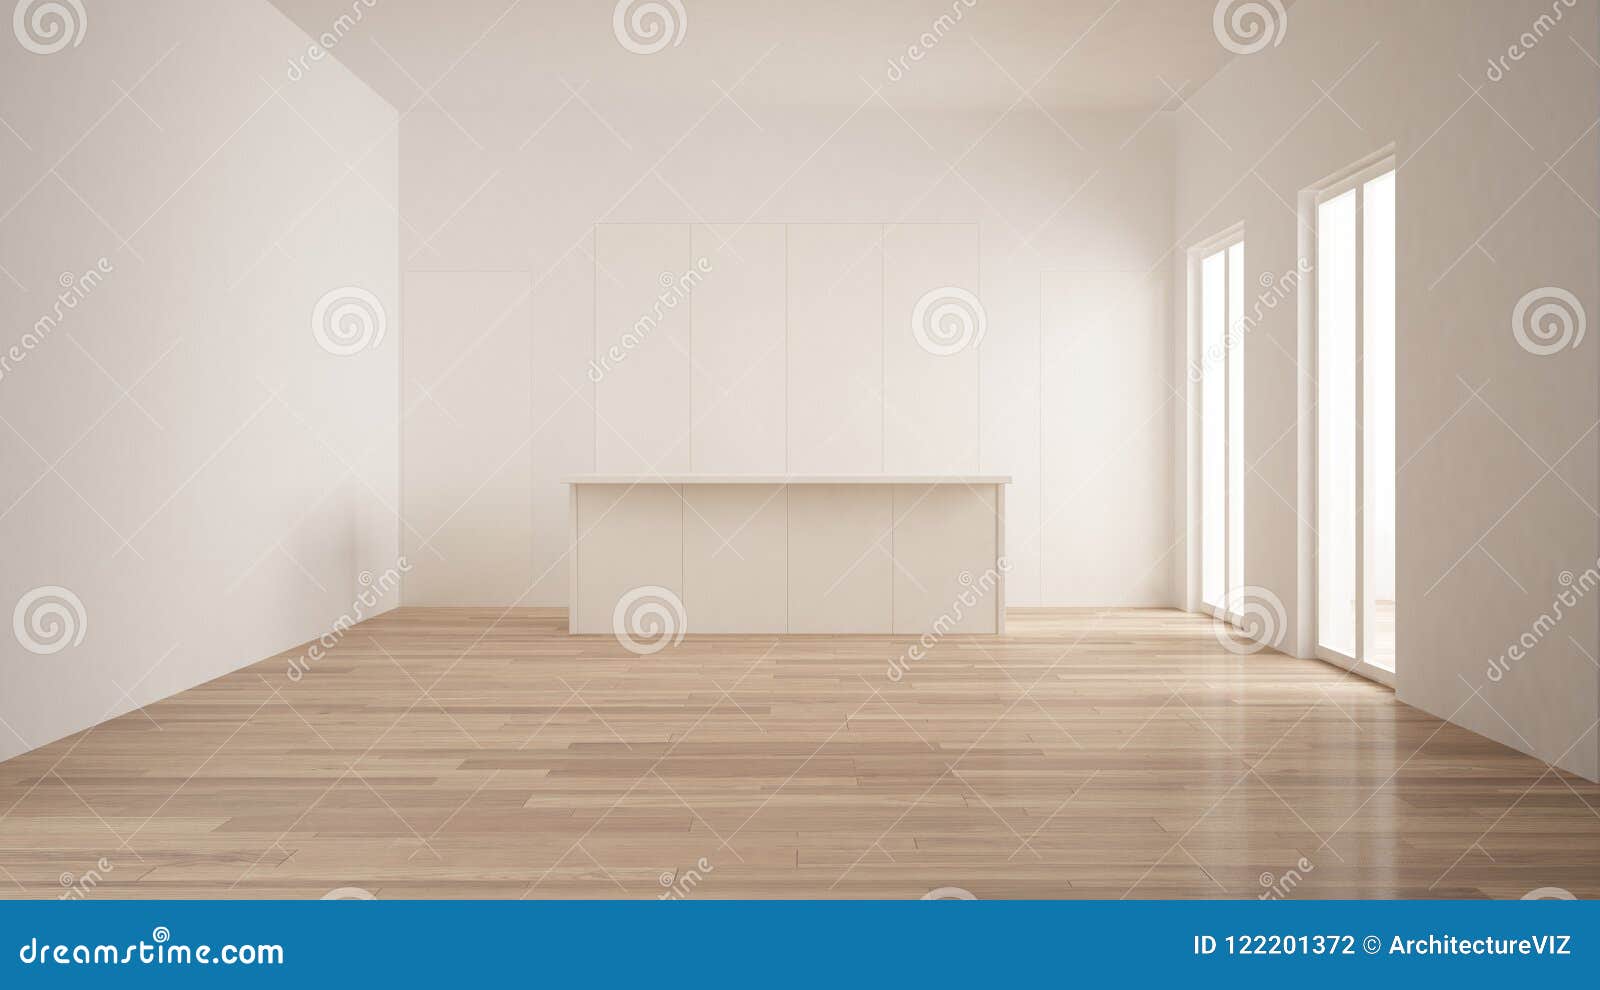 minimalism, modern empty room with white hidden kitchen with island, parquet floor, white and wooden interior 